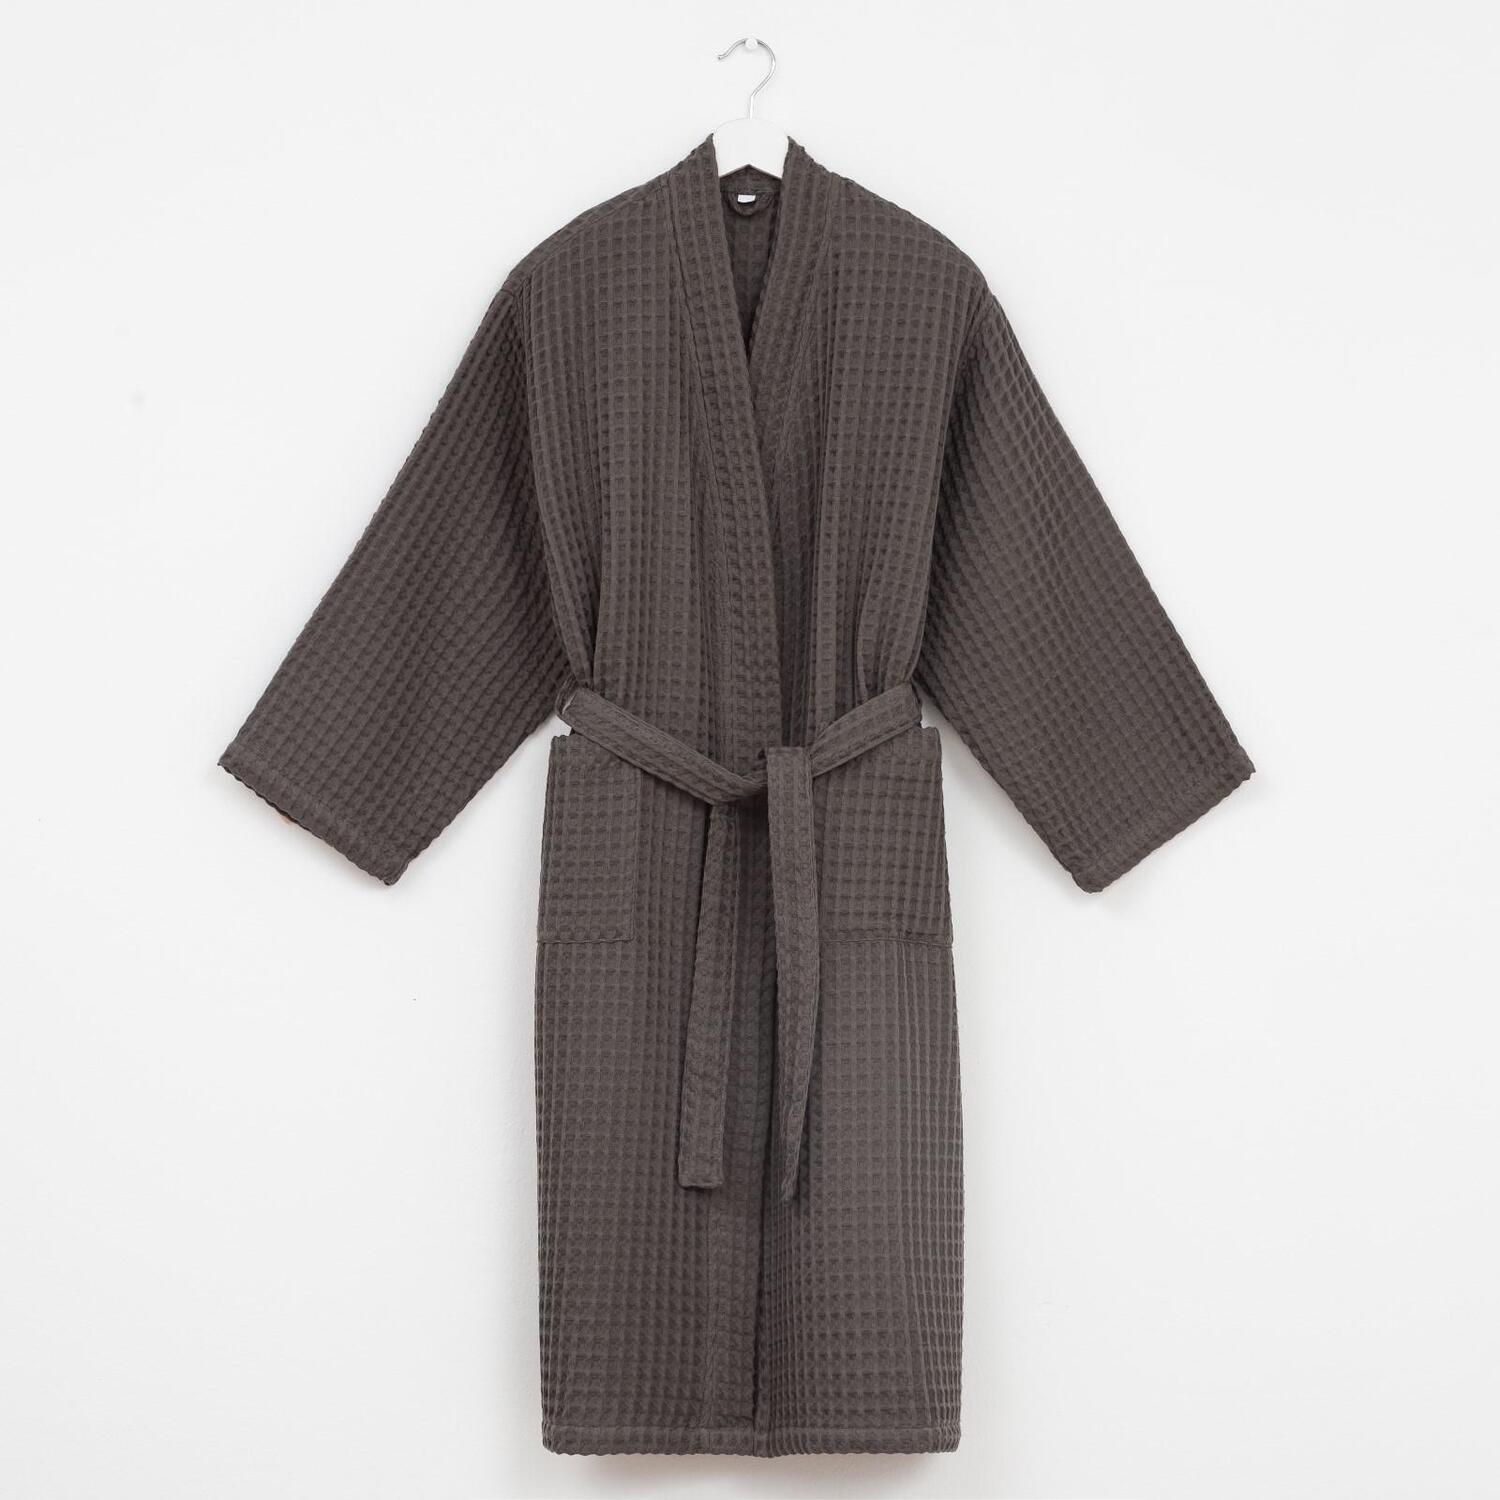 Банный халат Boho цвет: серо-коричневый (XL)